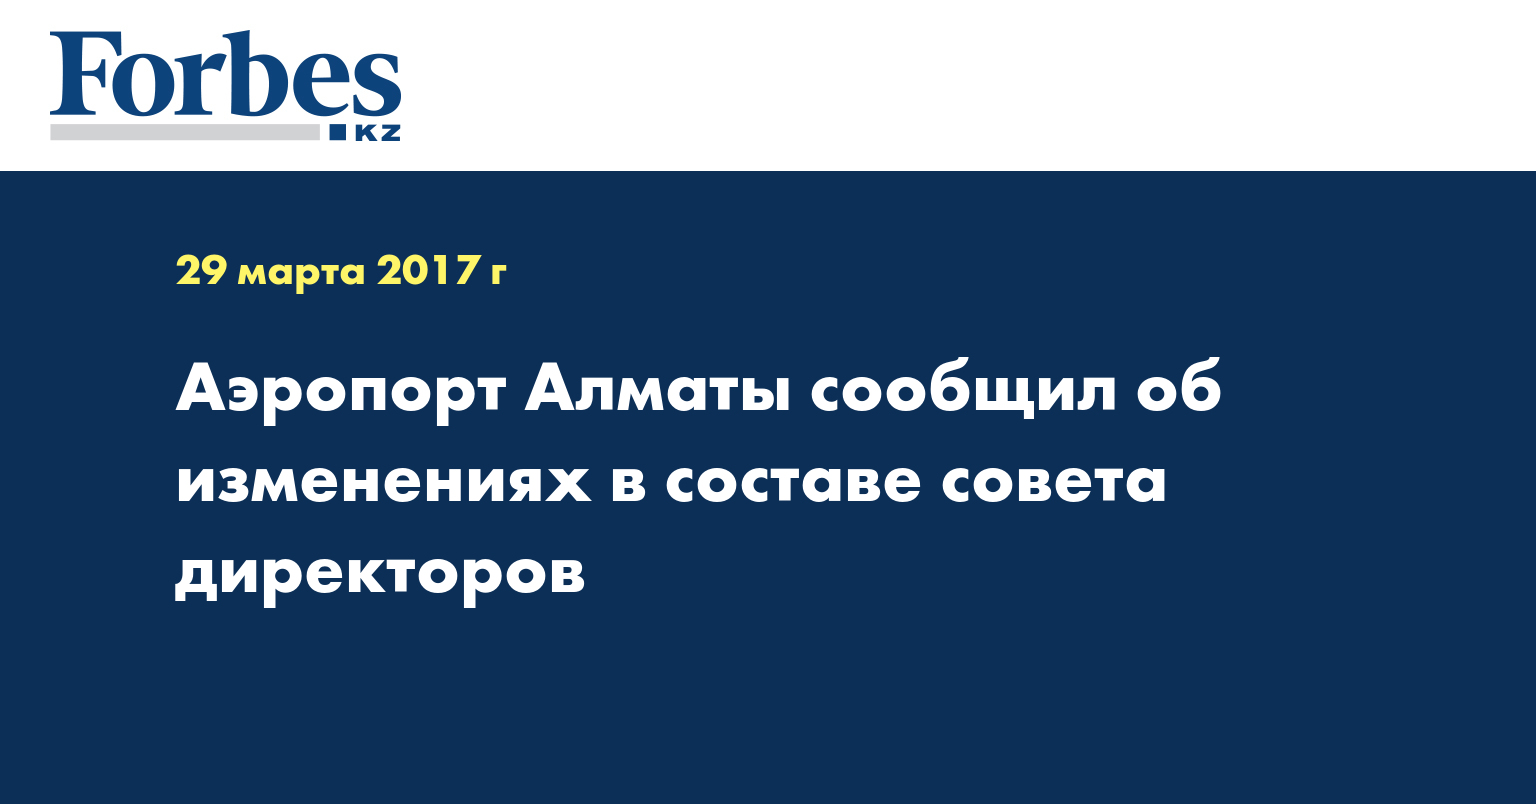 Аэропорт Алматы сообщил об изменениях в составе совета директоров